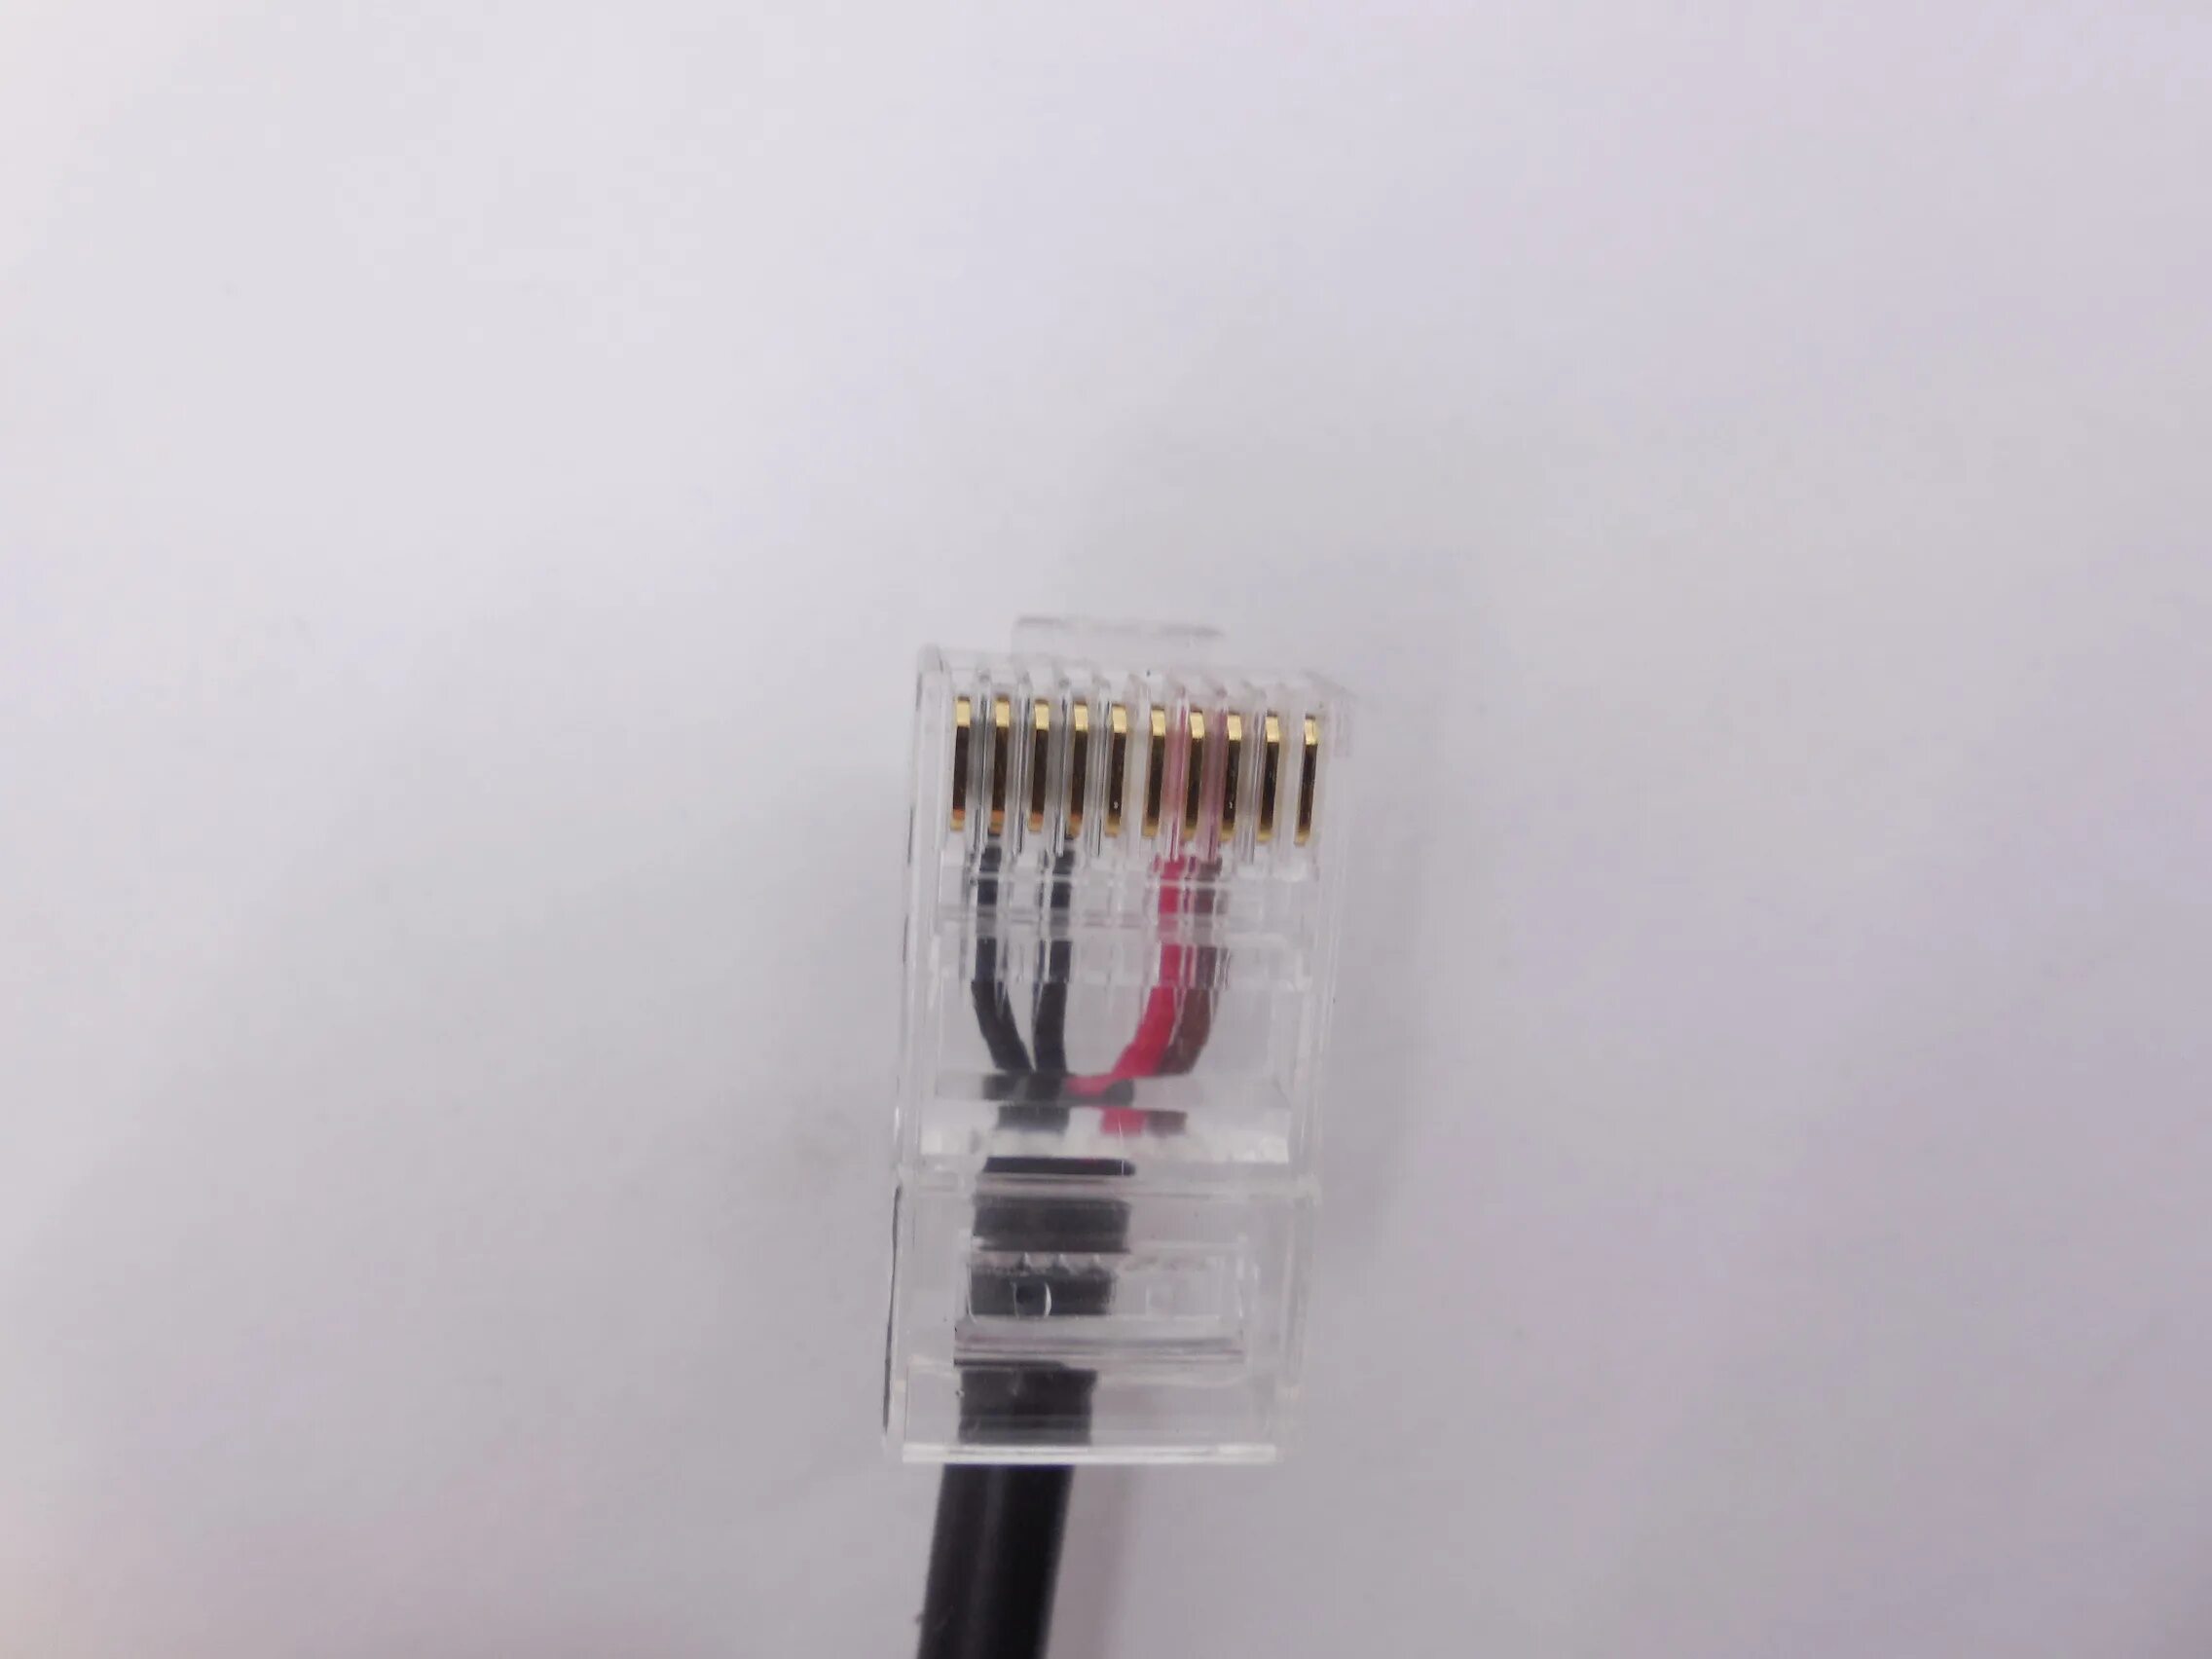 Apc usb rj45 pinout. Консольный кабель rj45 Dahua. Консольный кабель APC rj45->rs232. USB - rg45 Cisco Cable. Консольный кабель rj45 распиновка.